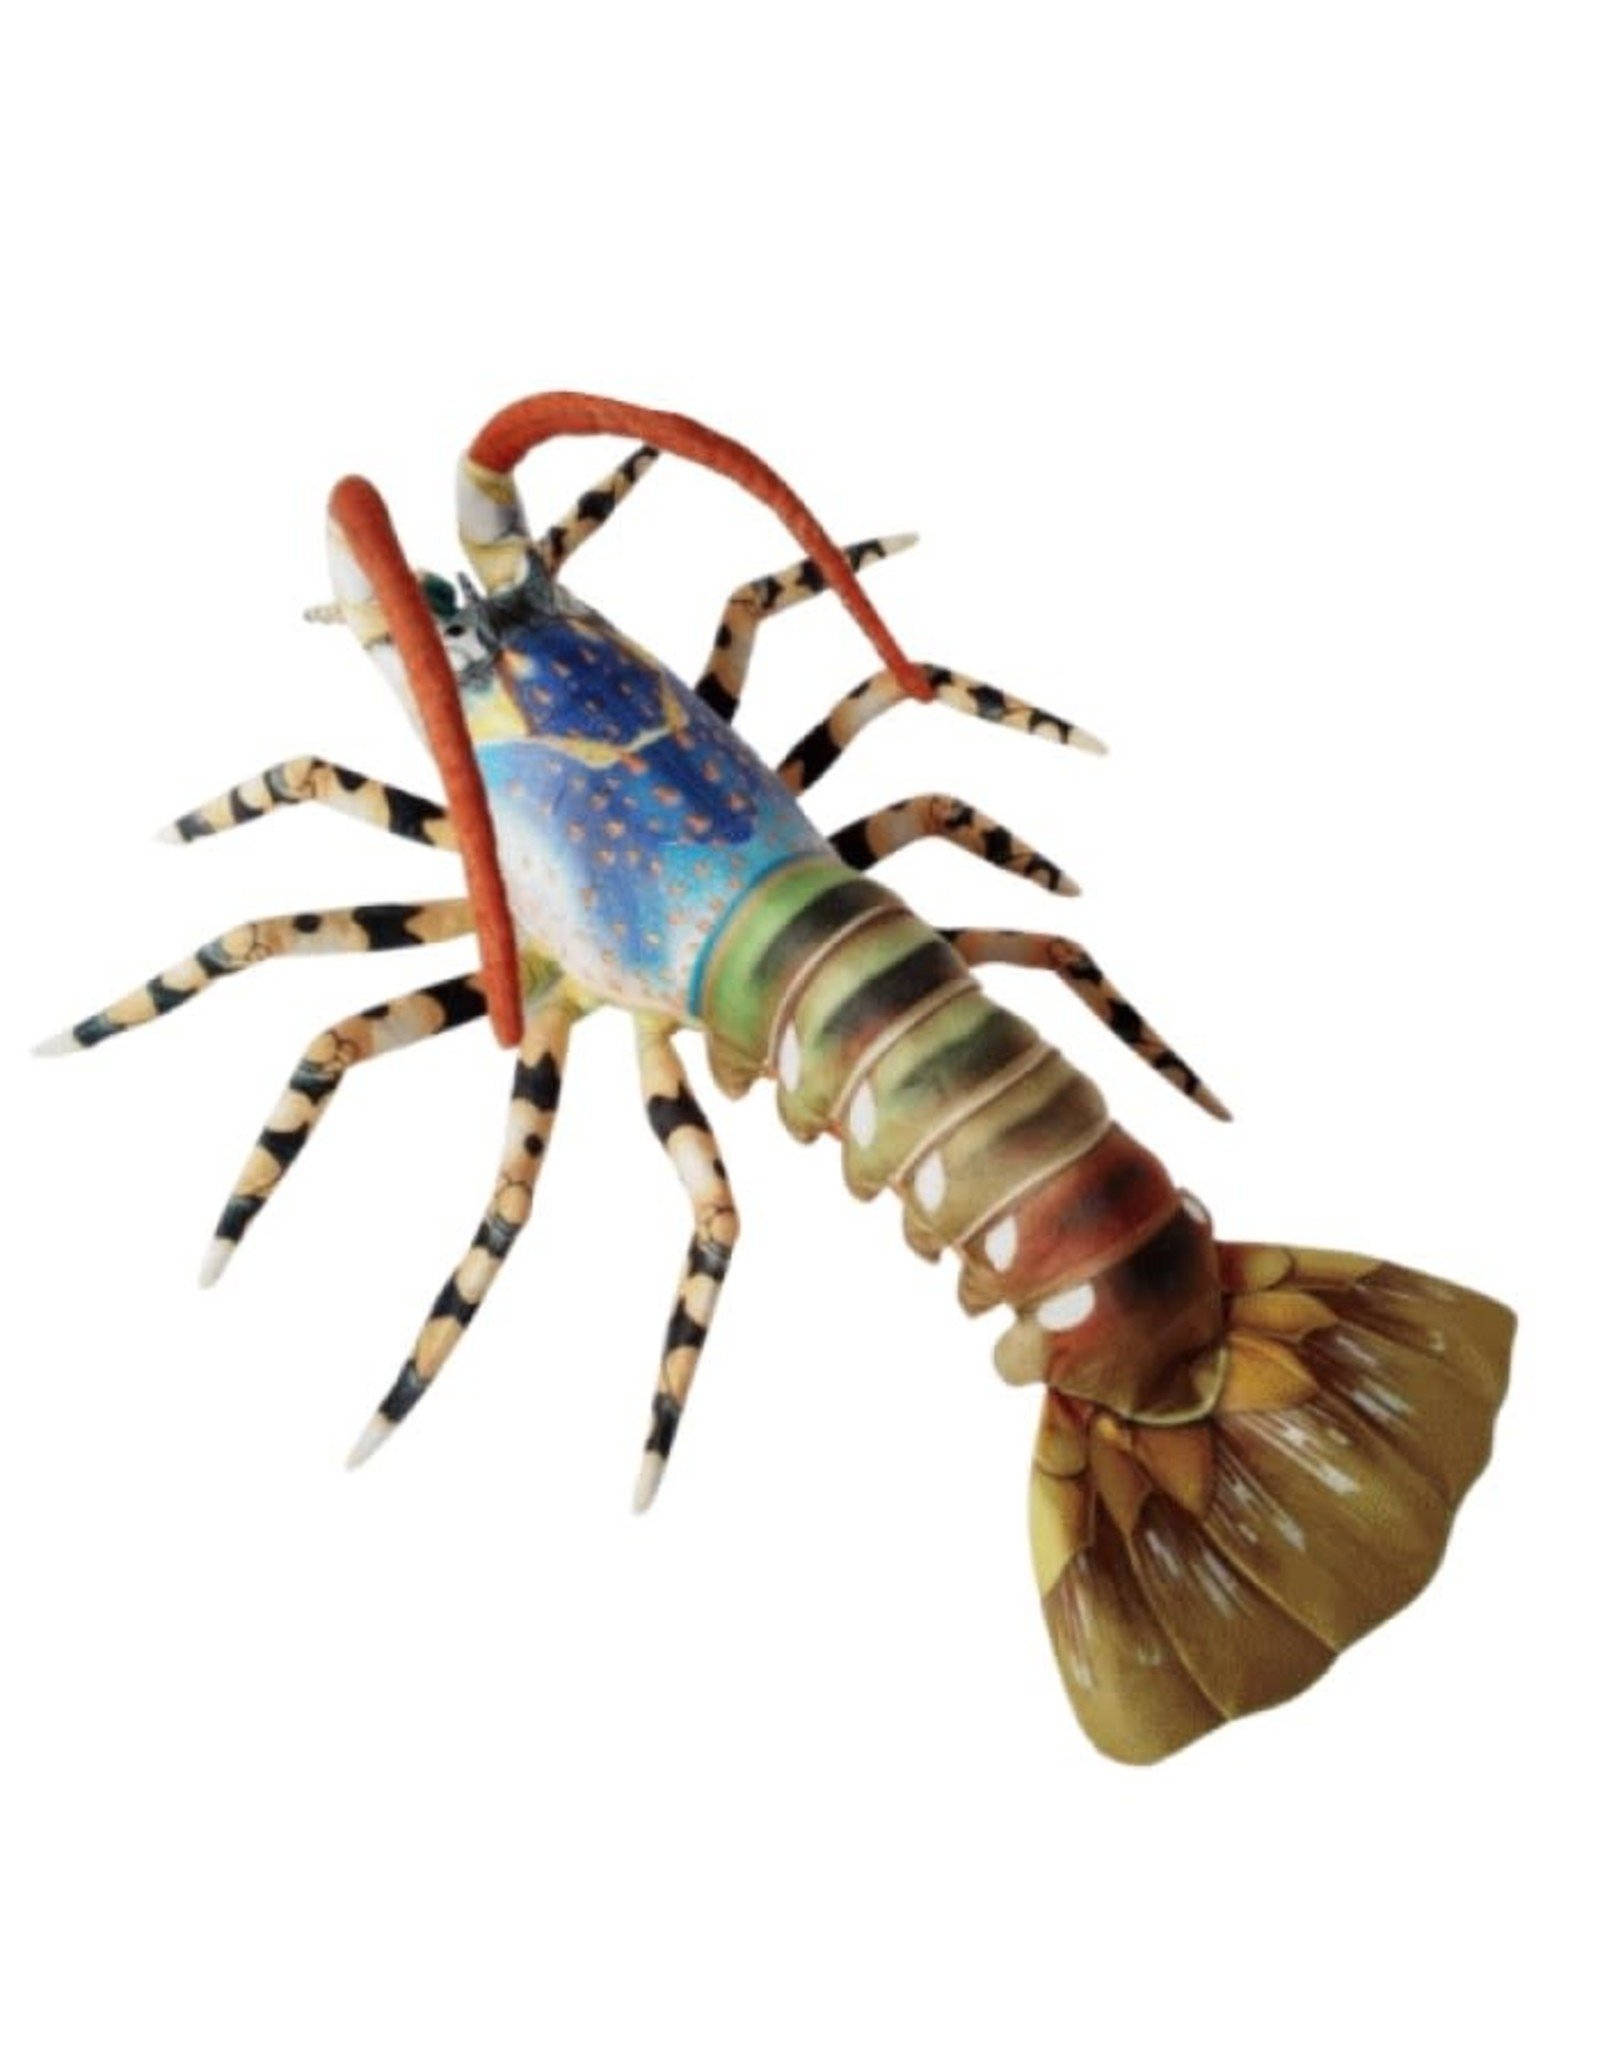 blue spiny lobster